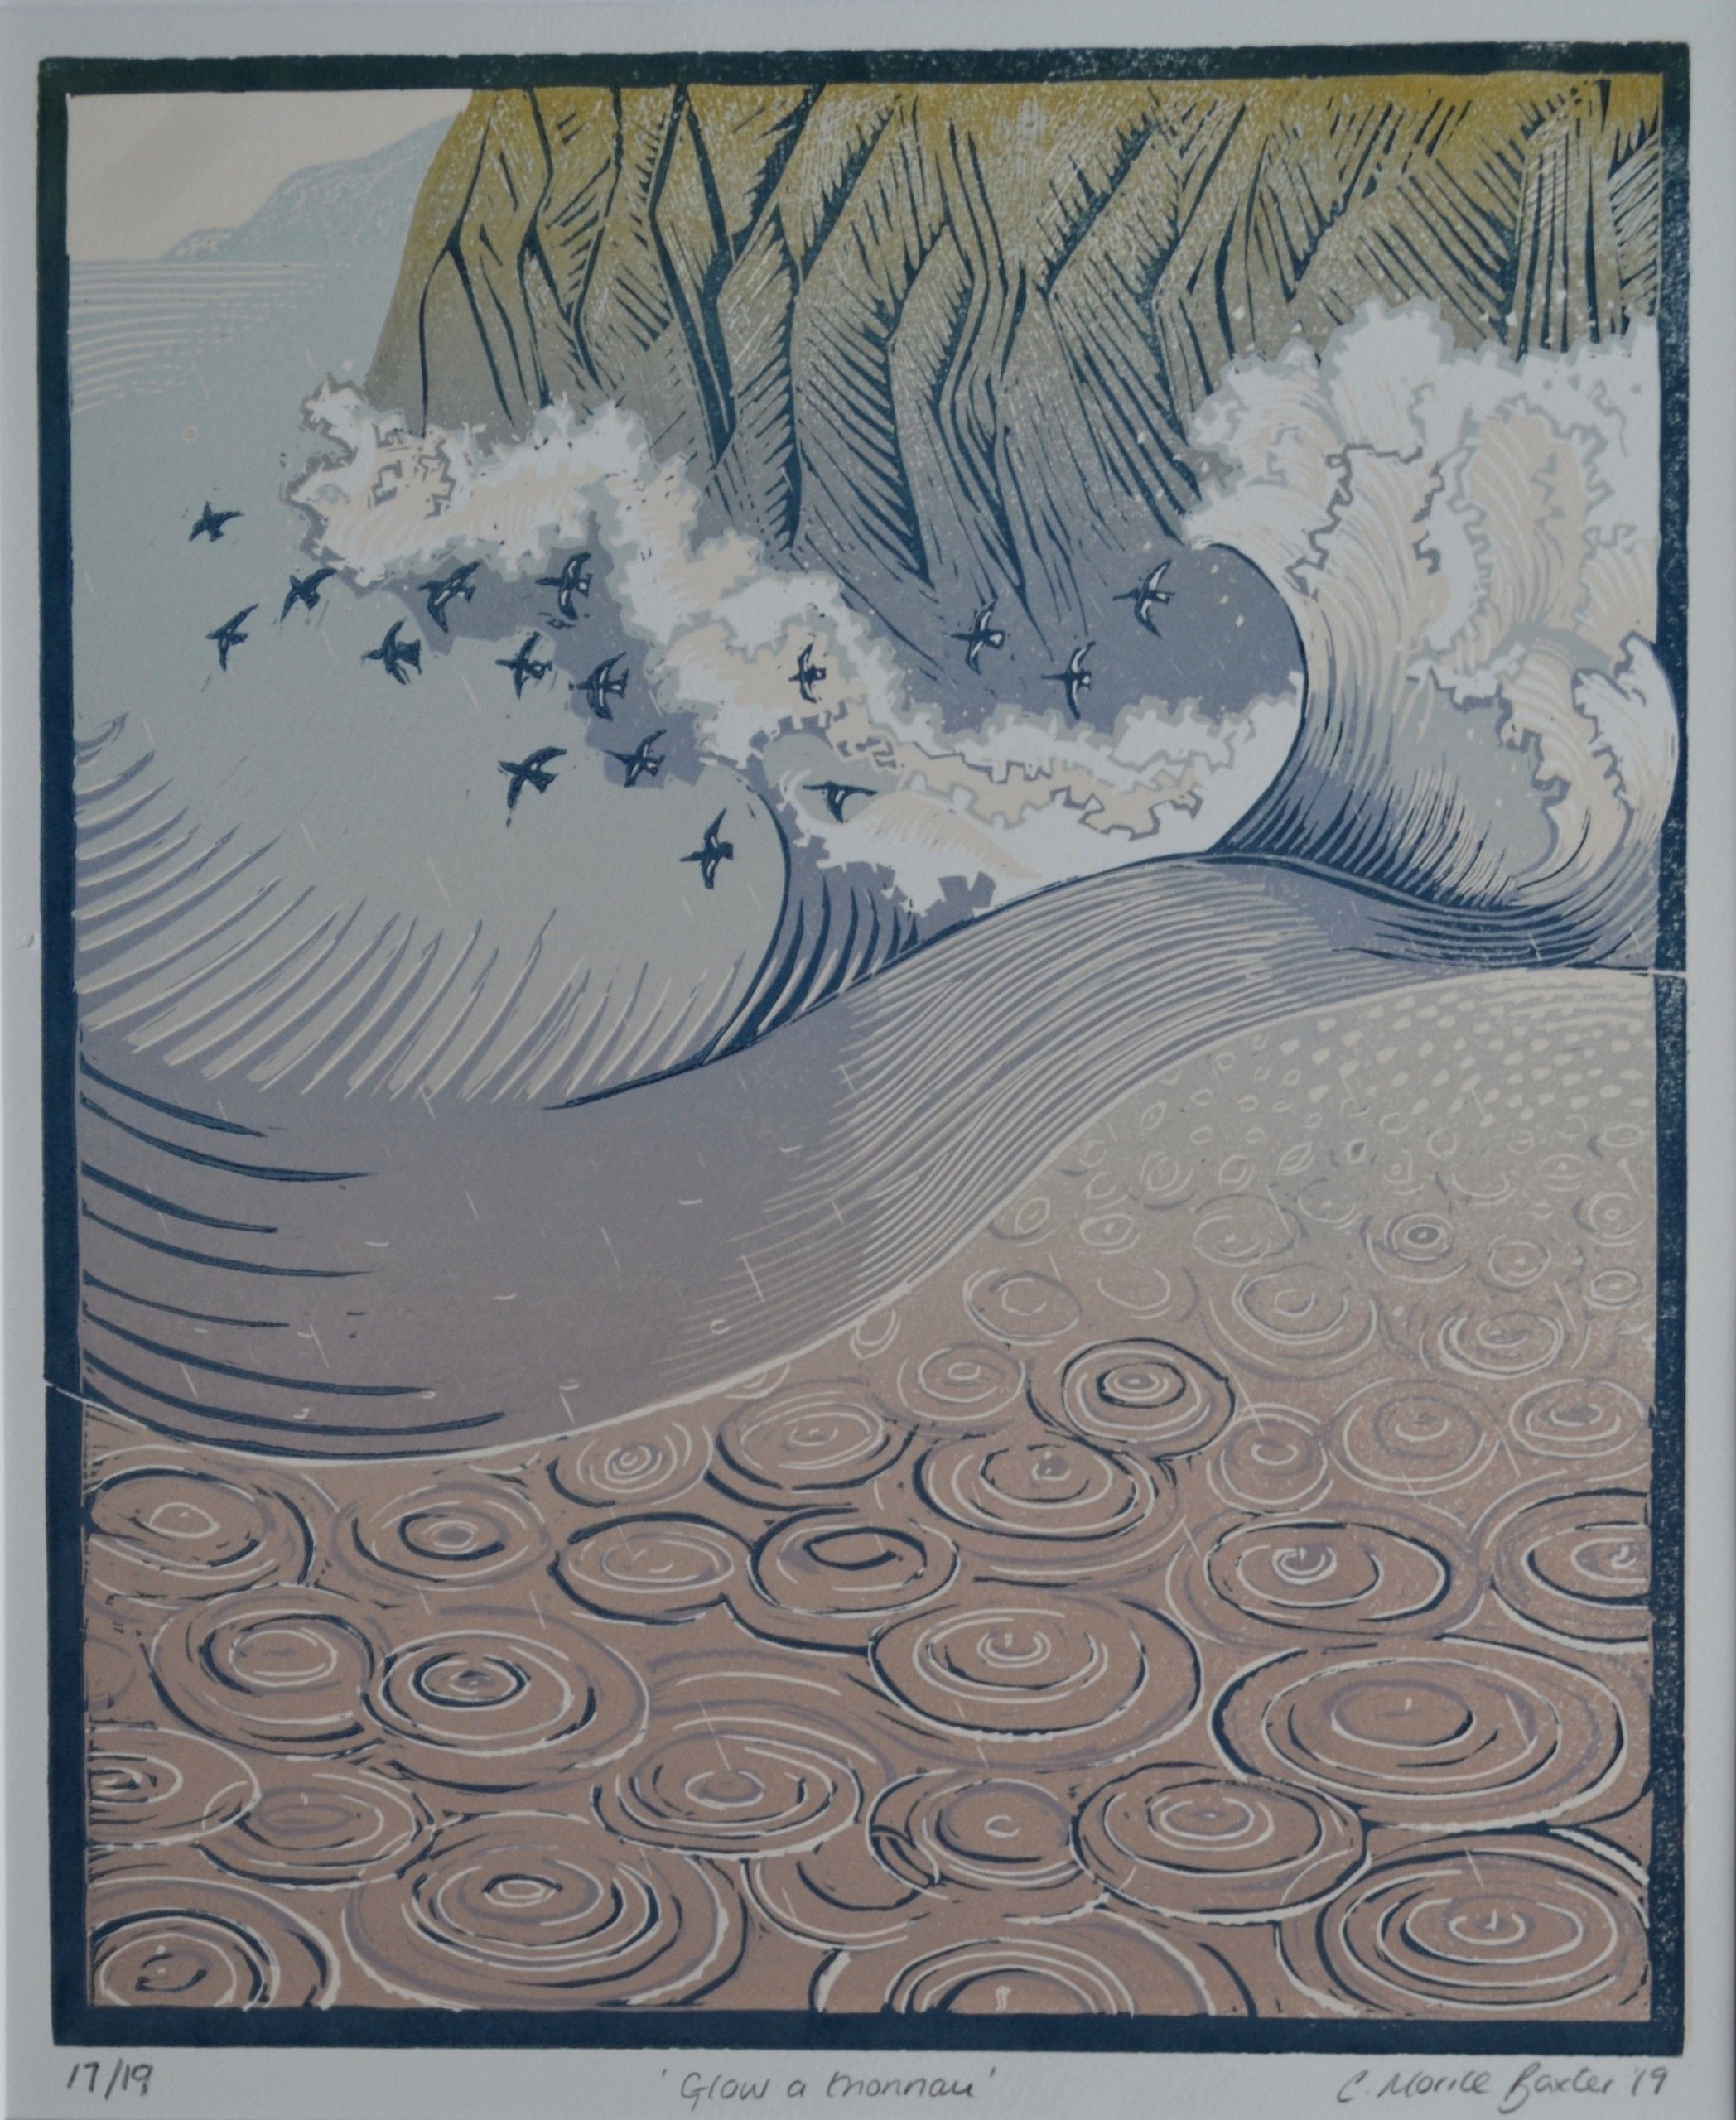 Glaw A Thonnau (Rain and Waves) by Charlotte Baxter